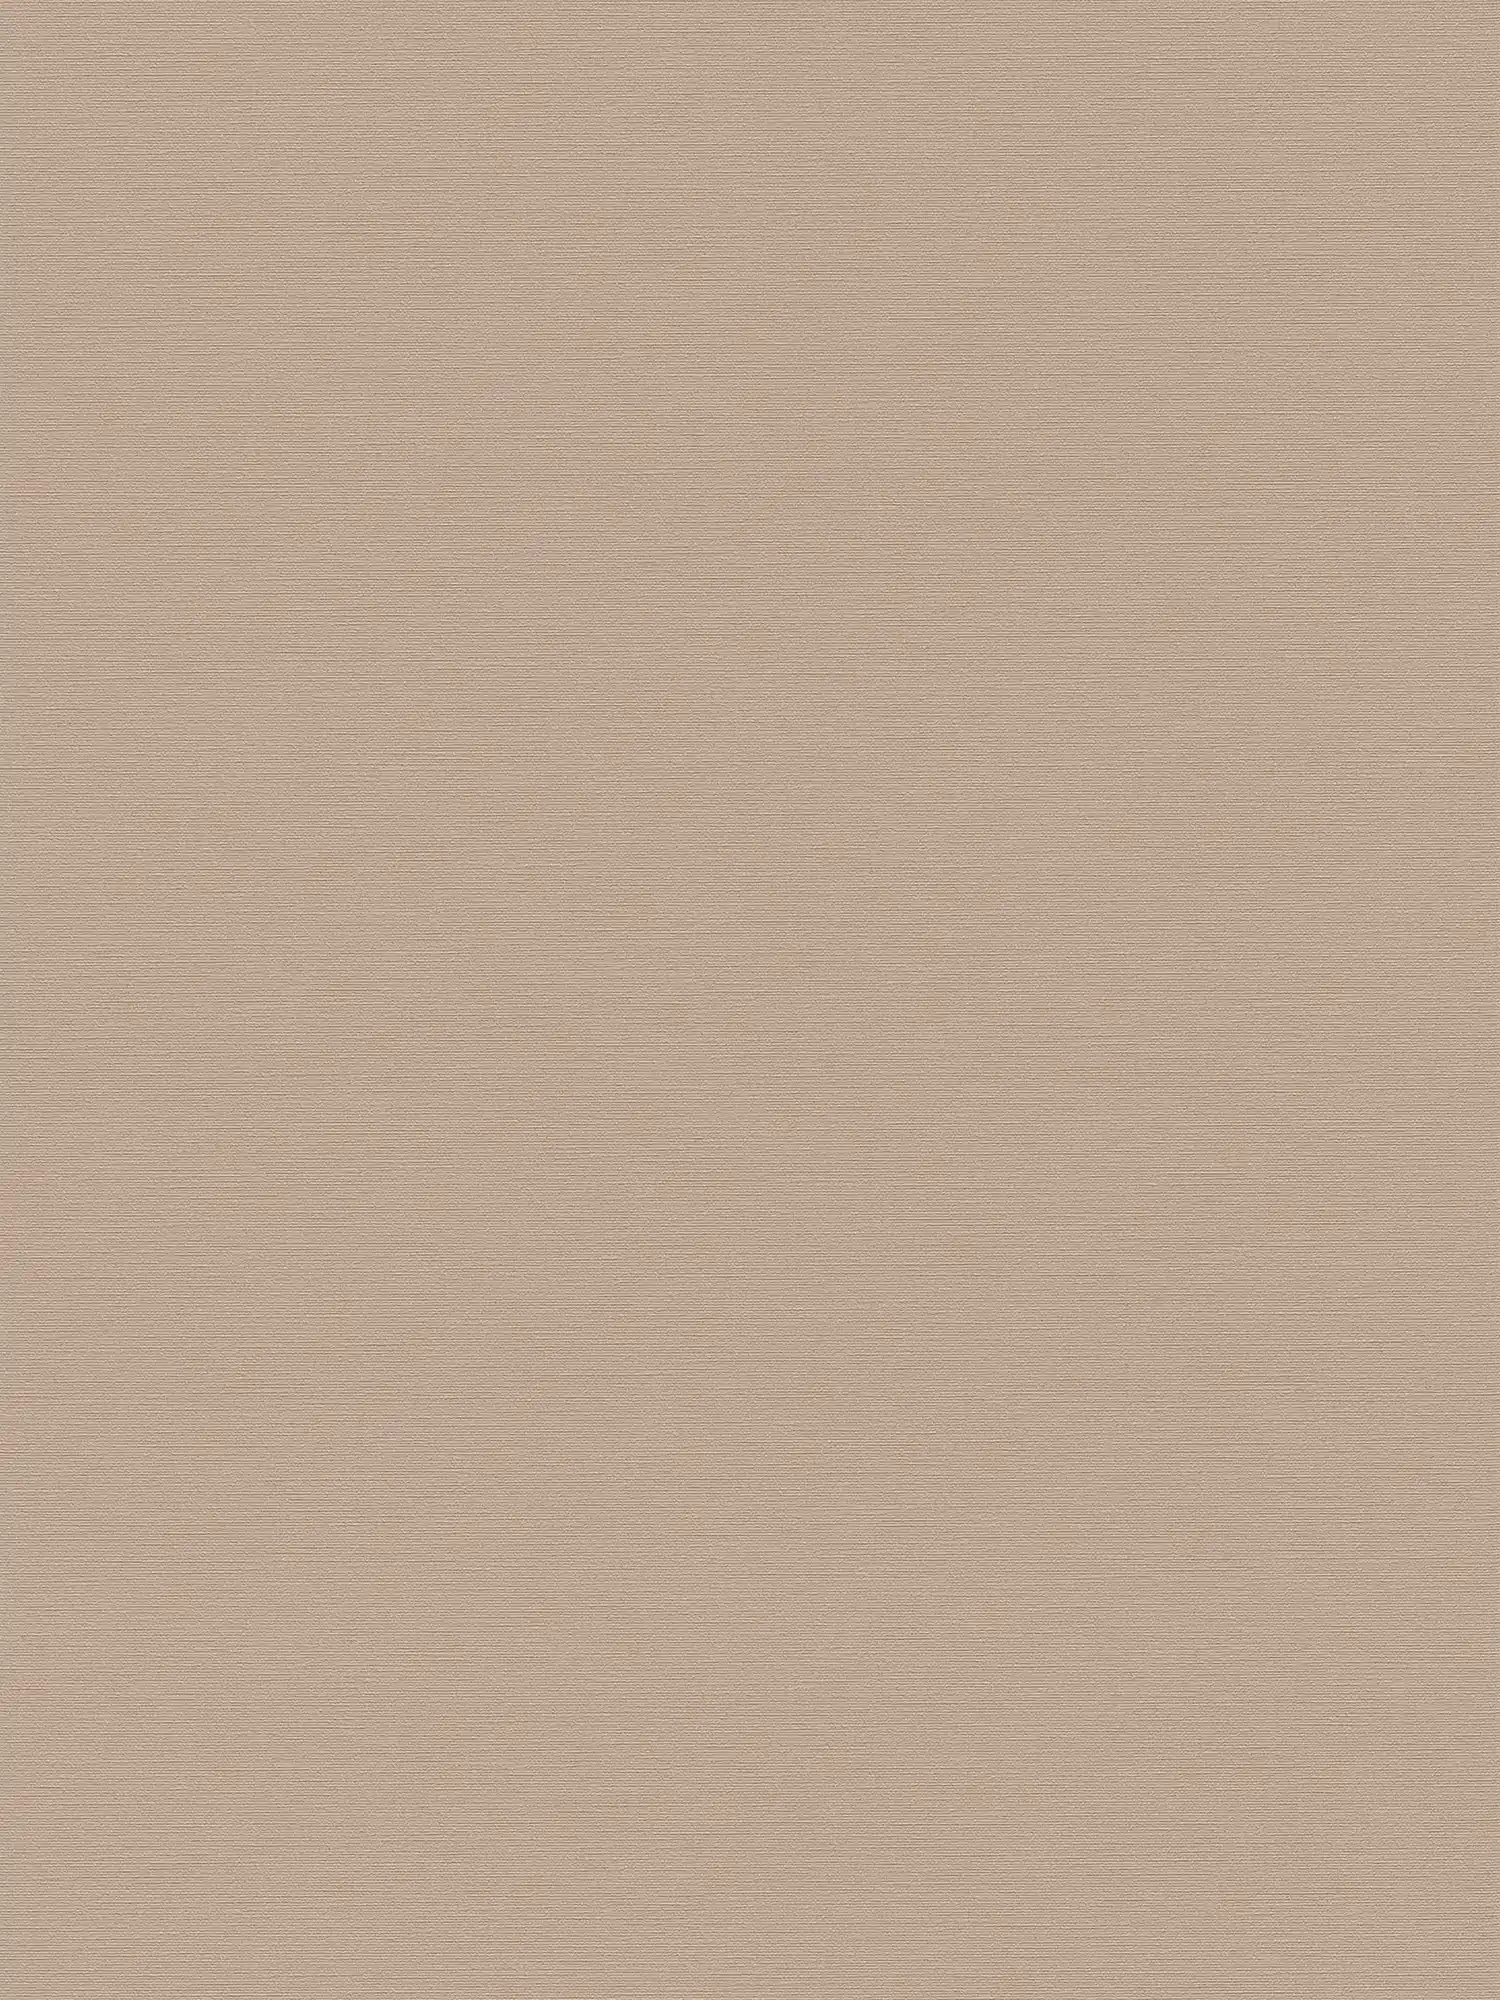 Papel pintado de unidad discreta con aspecto de lino - beige
